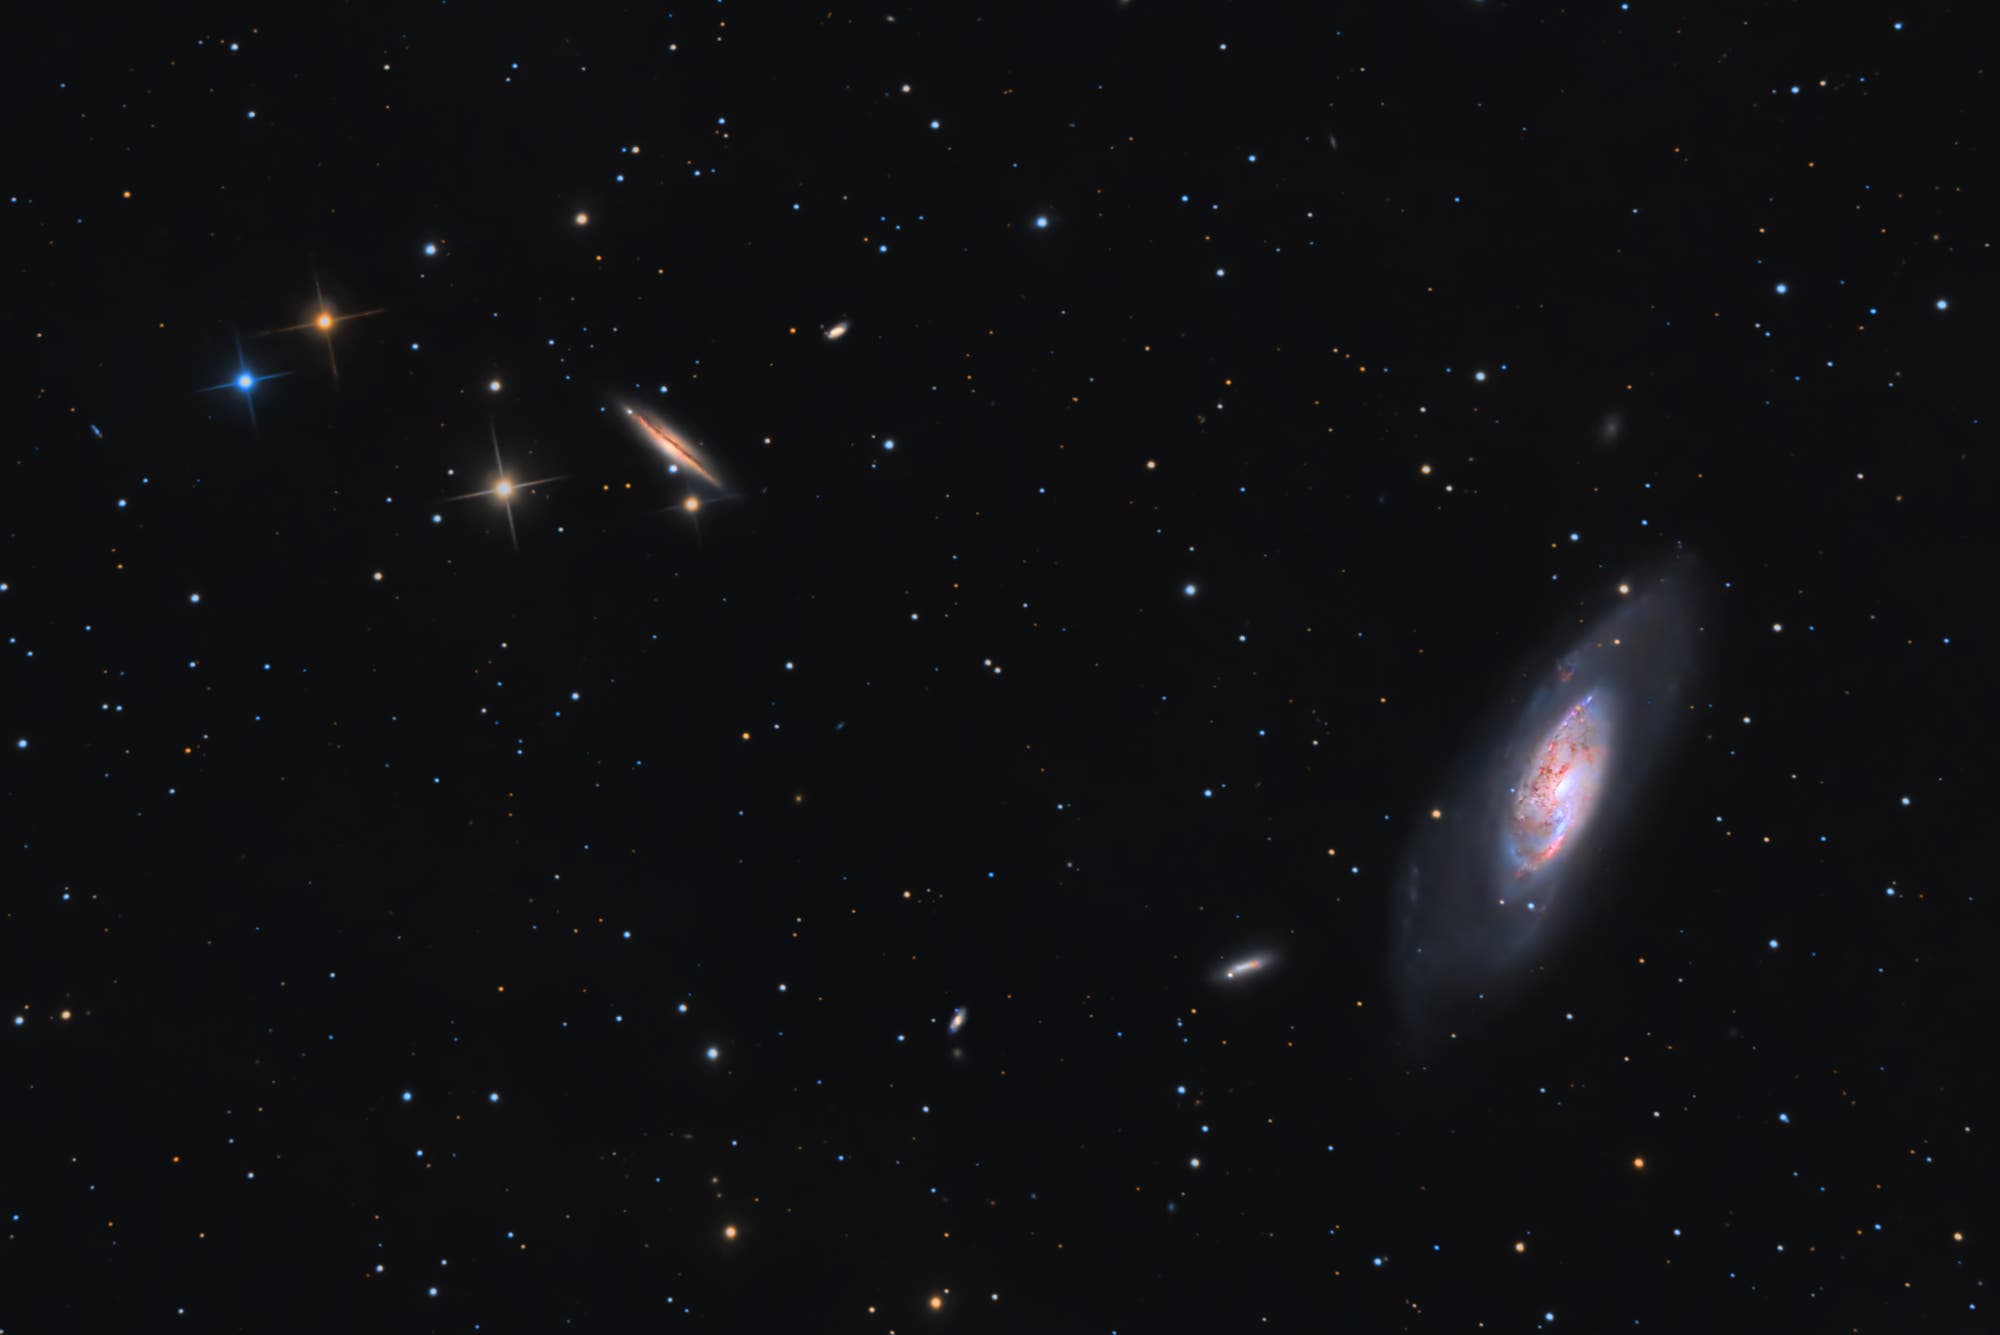 Messier 106 